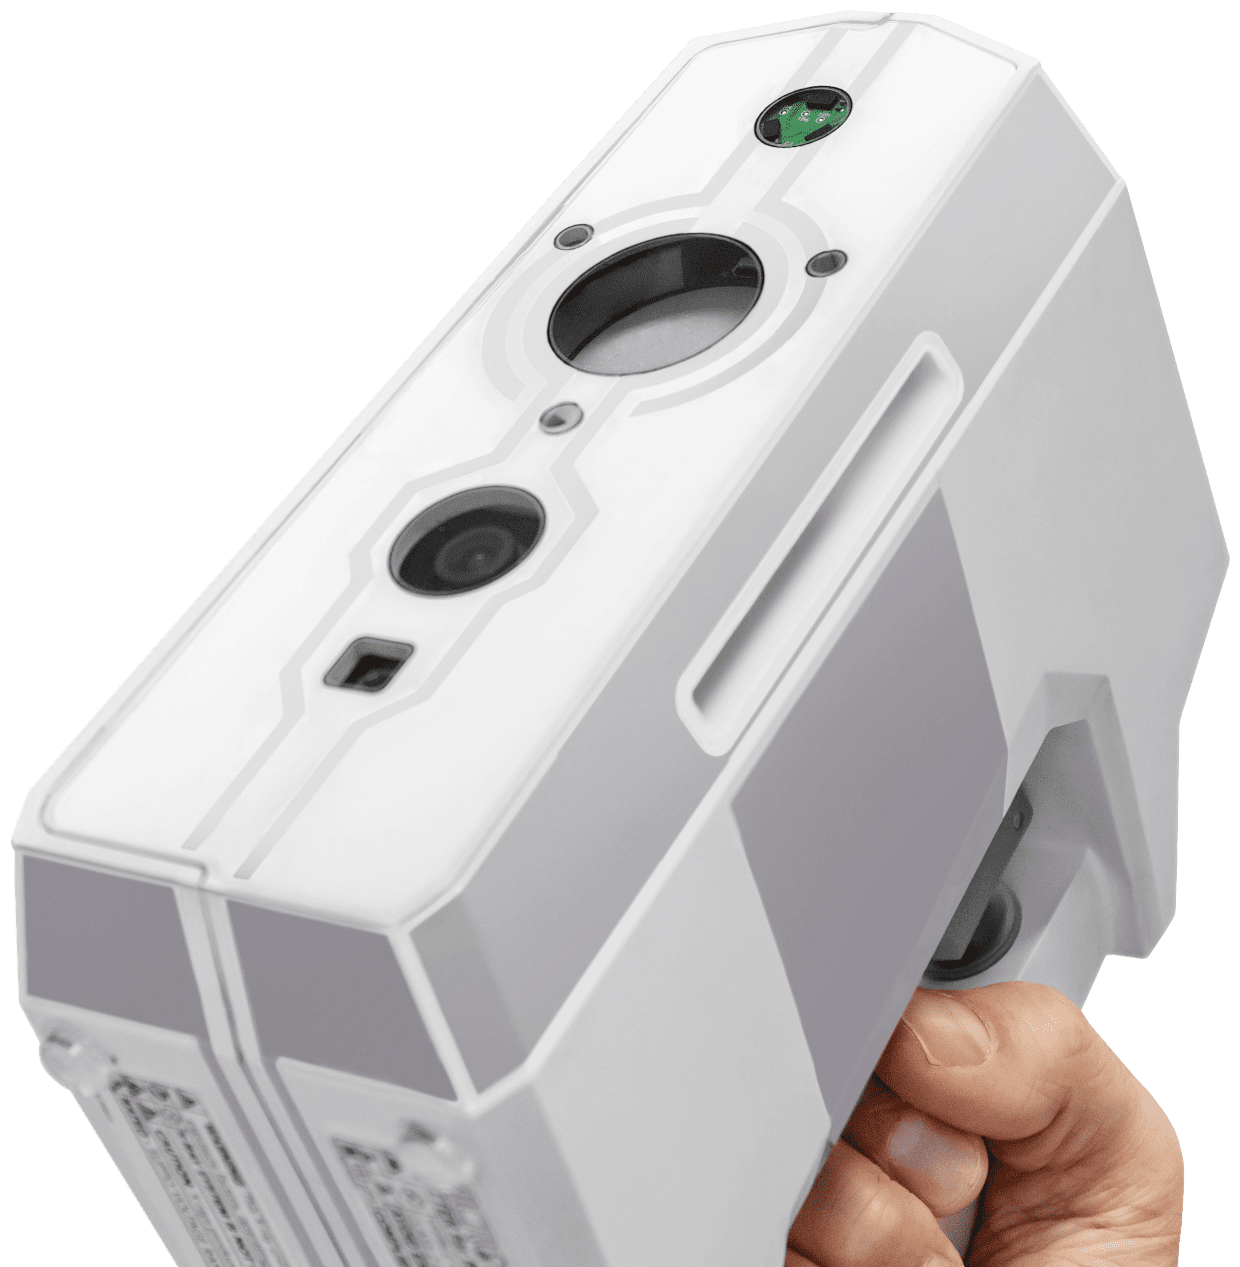 Micro C handheld medical imaging device